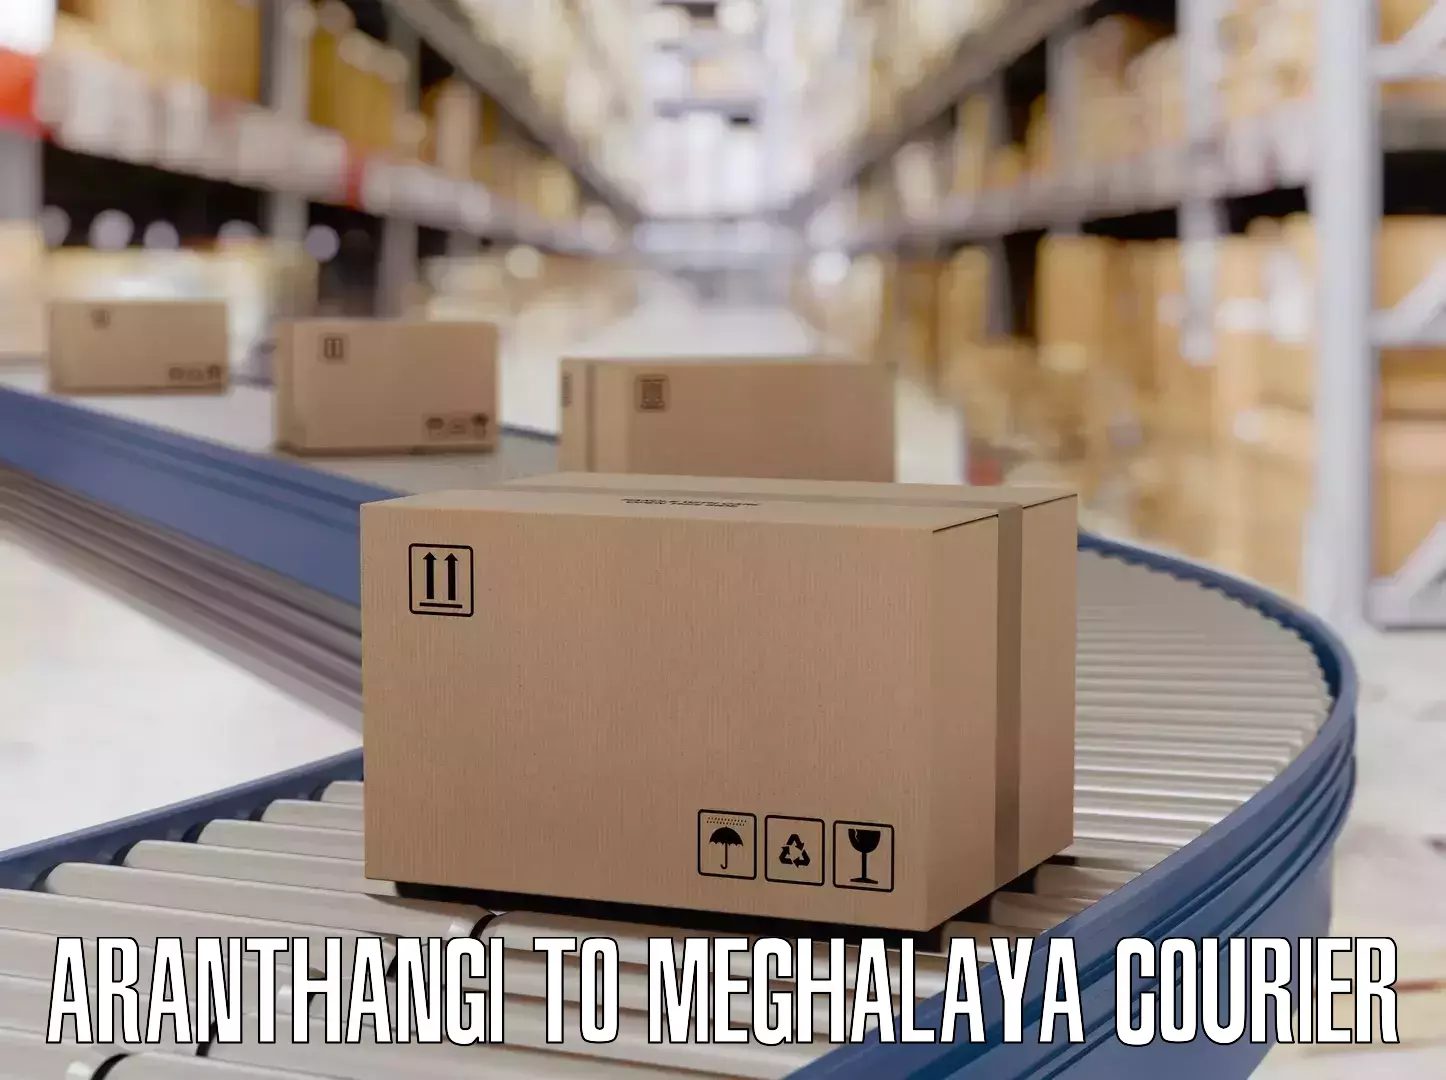 Luggage transport pricing Aranthangi to Meghalaya